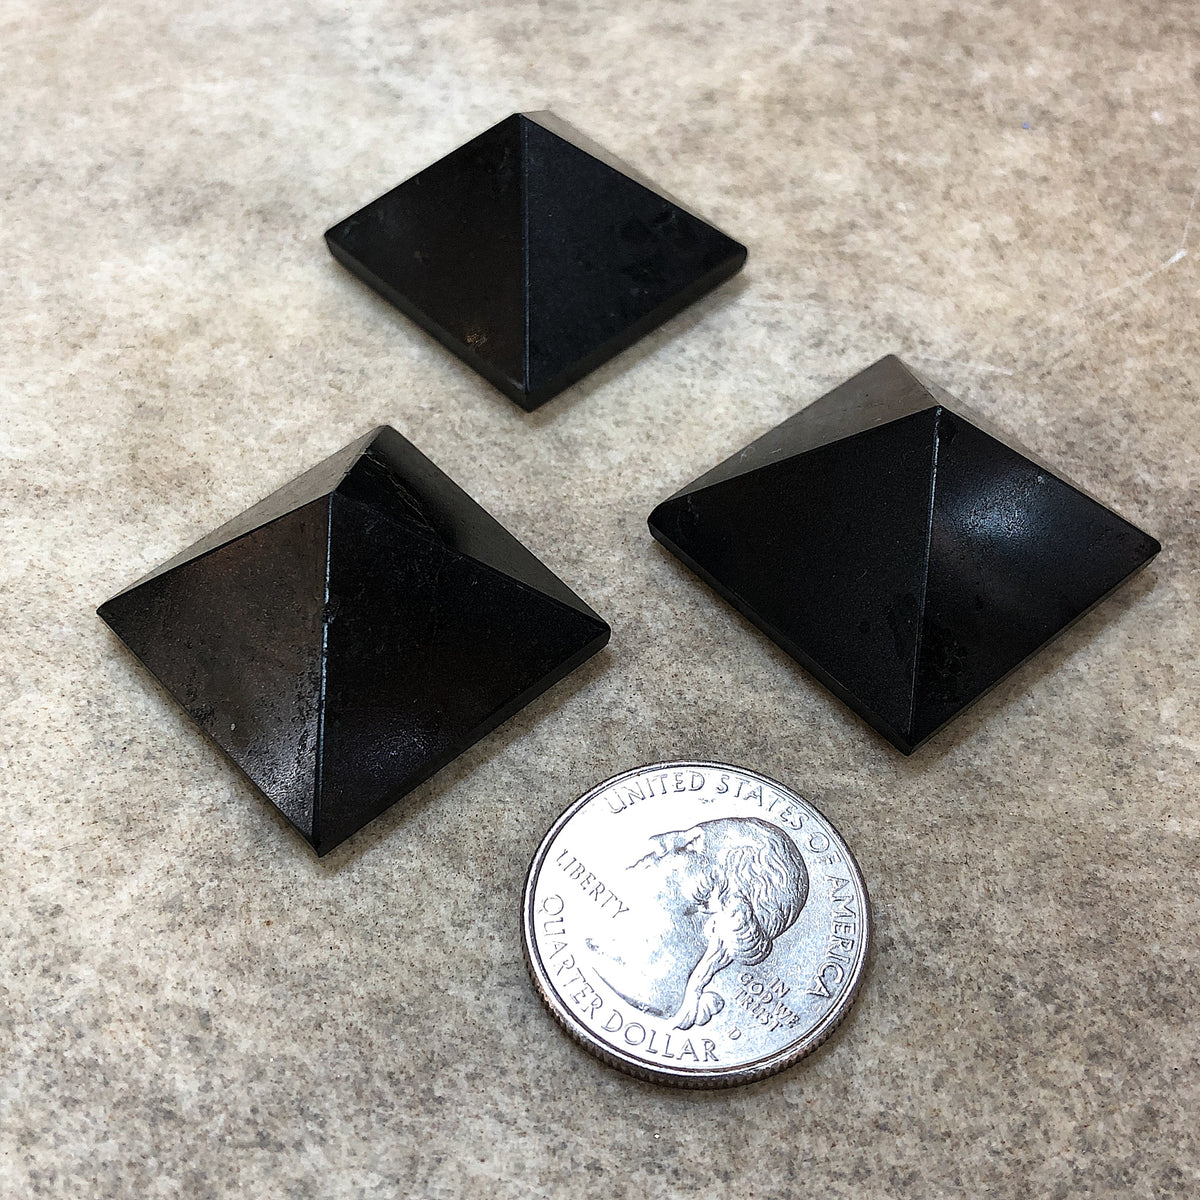 Comparison shot of three black tourmaline pyramids and a US quarter coin